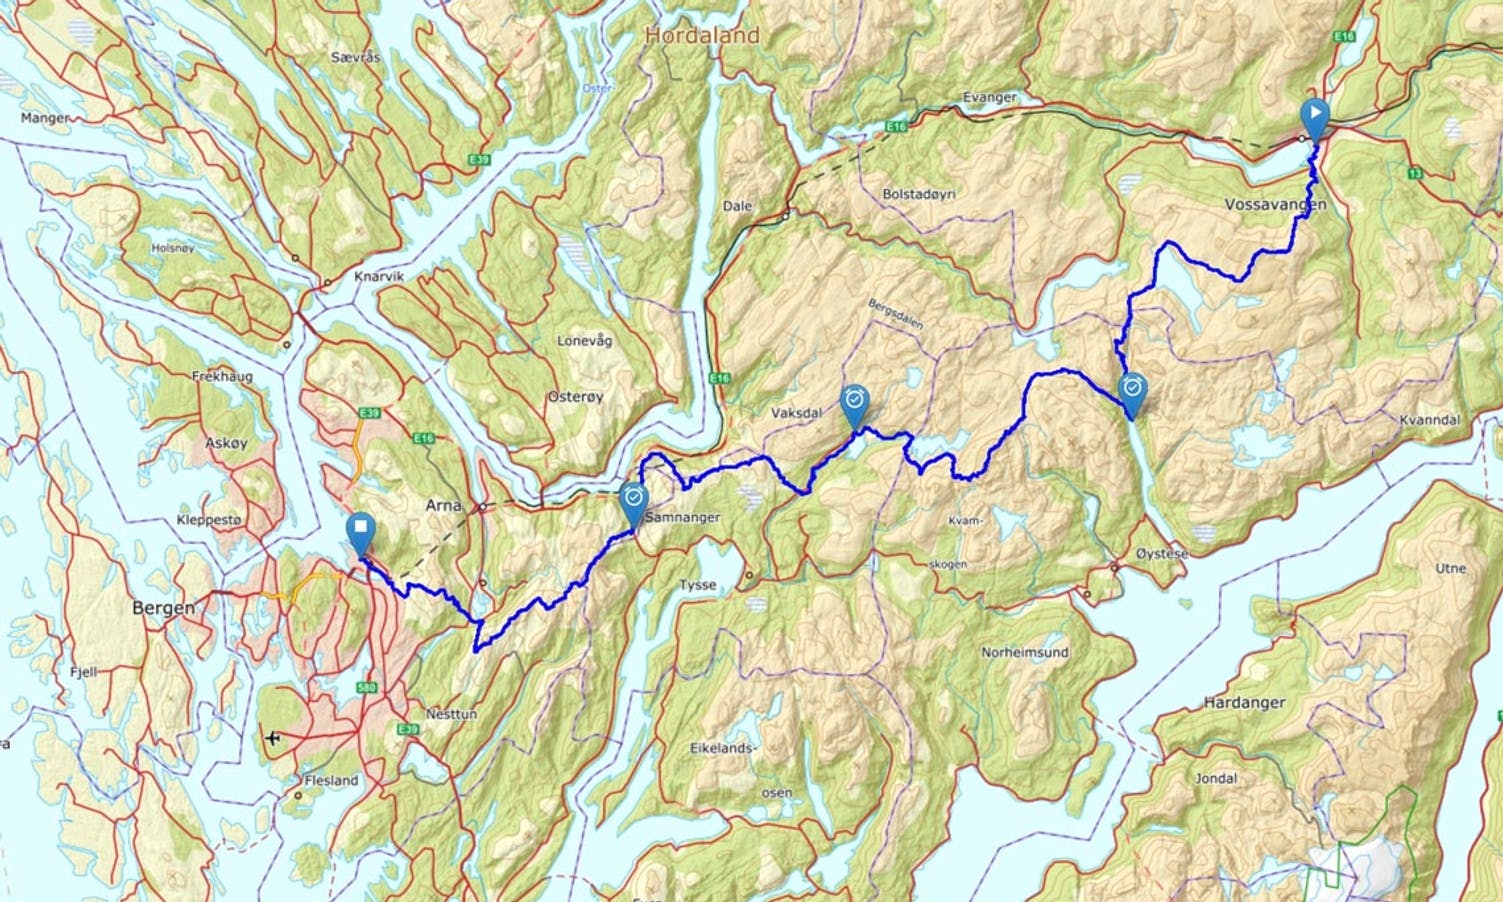 Xreid Voss-Bergen er 132 km og 7300 høgdemeter.